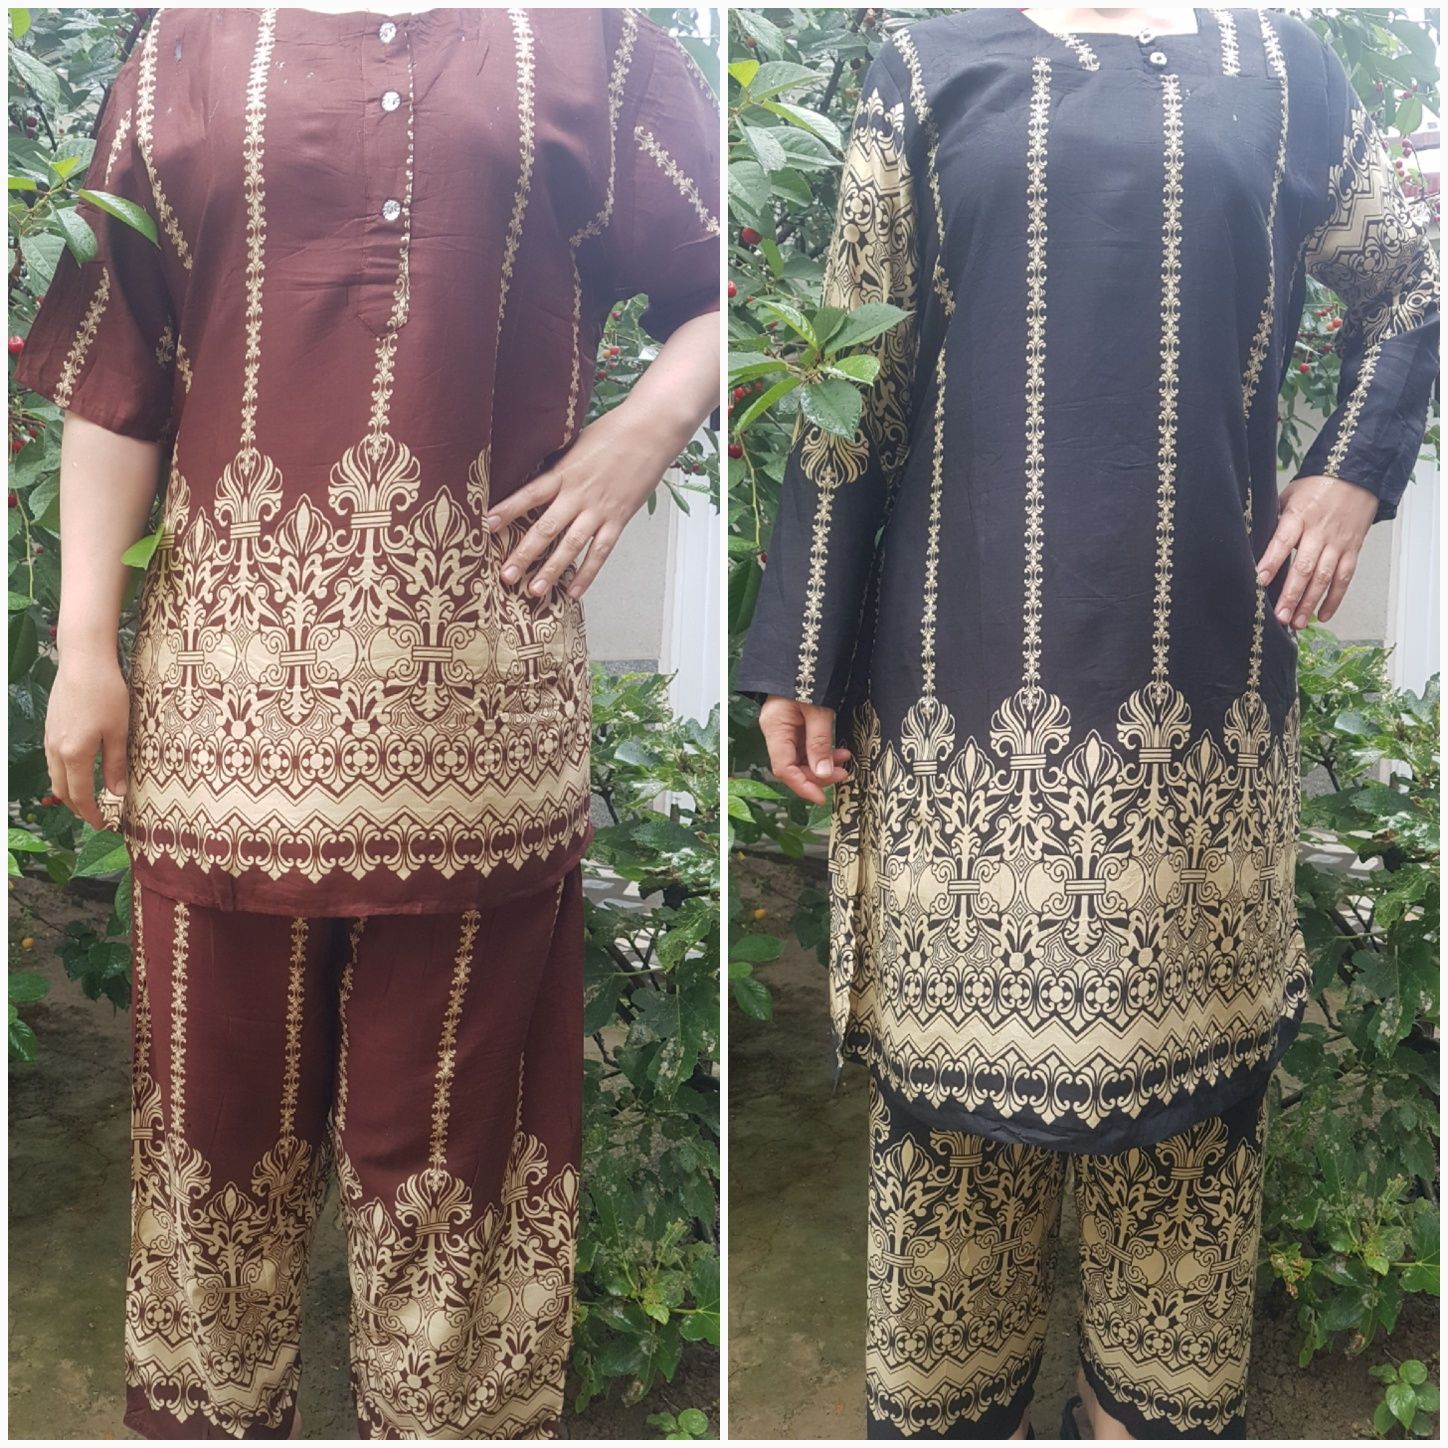 Штапелные платье Индонезия и Таиланд.Отличное качество.Штапел Таиланд.